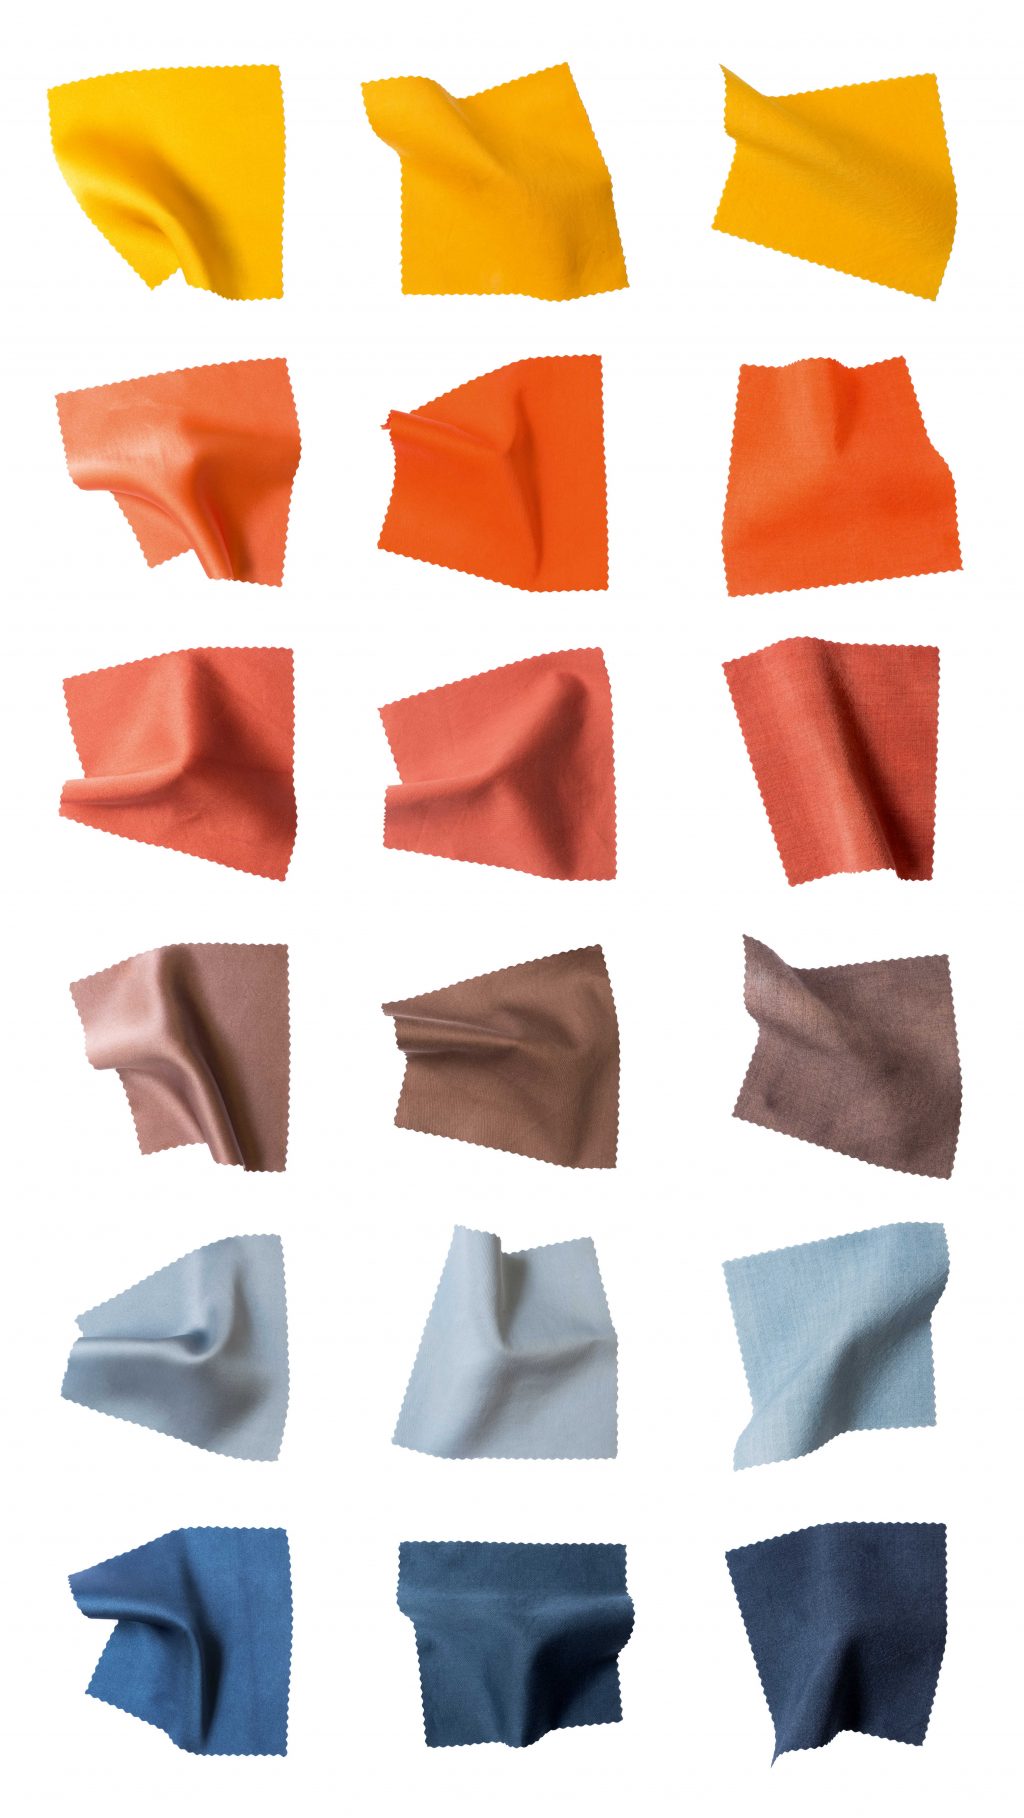 Privat: Colorcontex – Zusammenhänge zwischen Farbe und textilem Material 